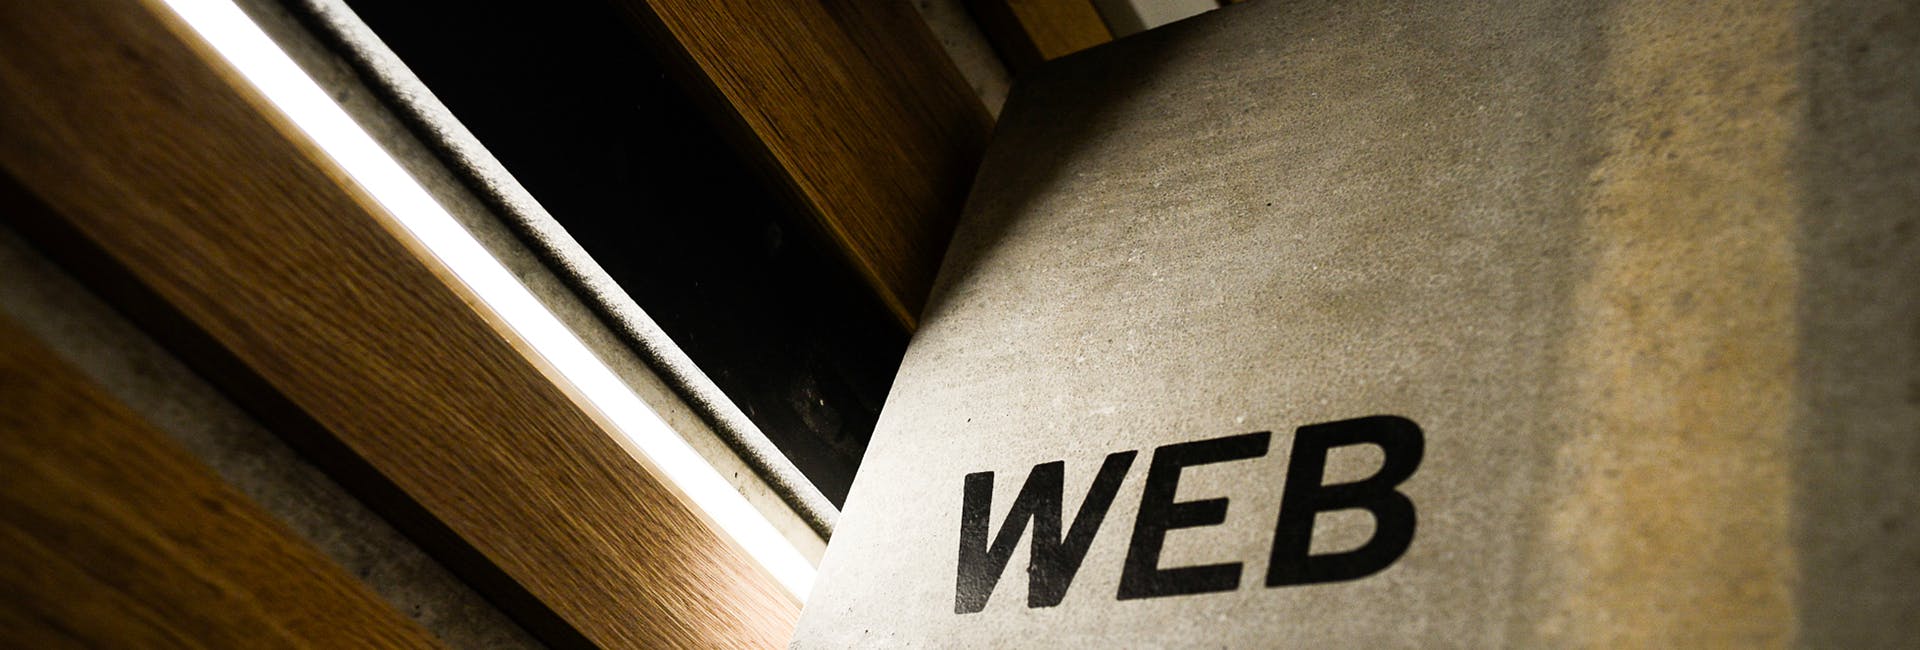 Le mot "Web" écrit sur une marche d'escalier du webqamplex, siège social de l'agence digitale Webqam - format carré